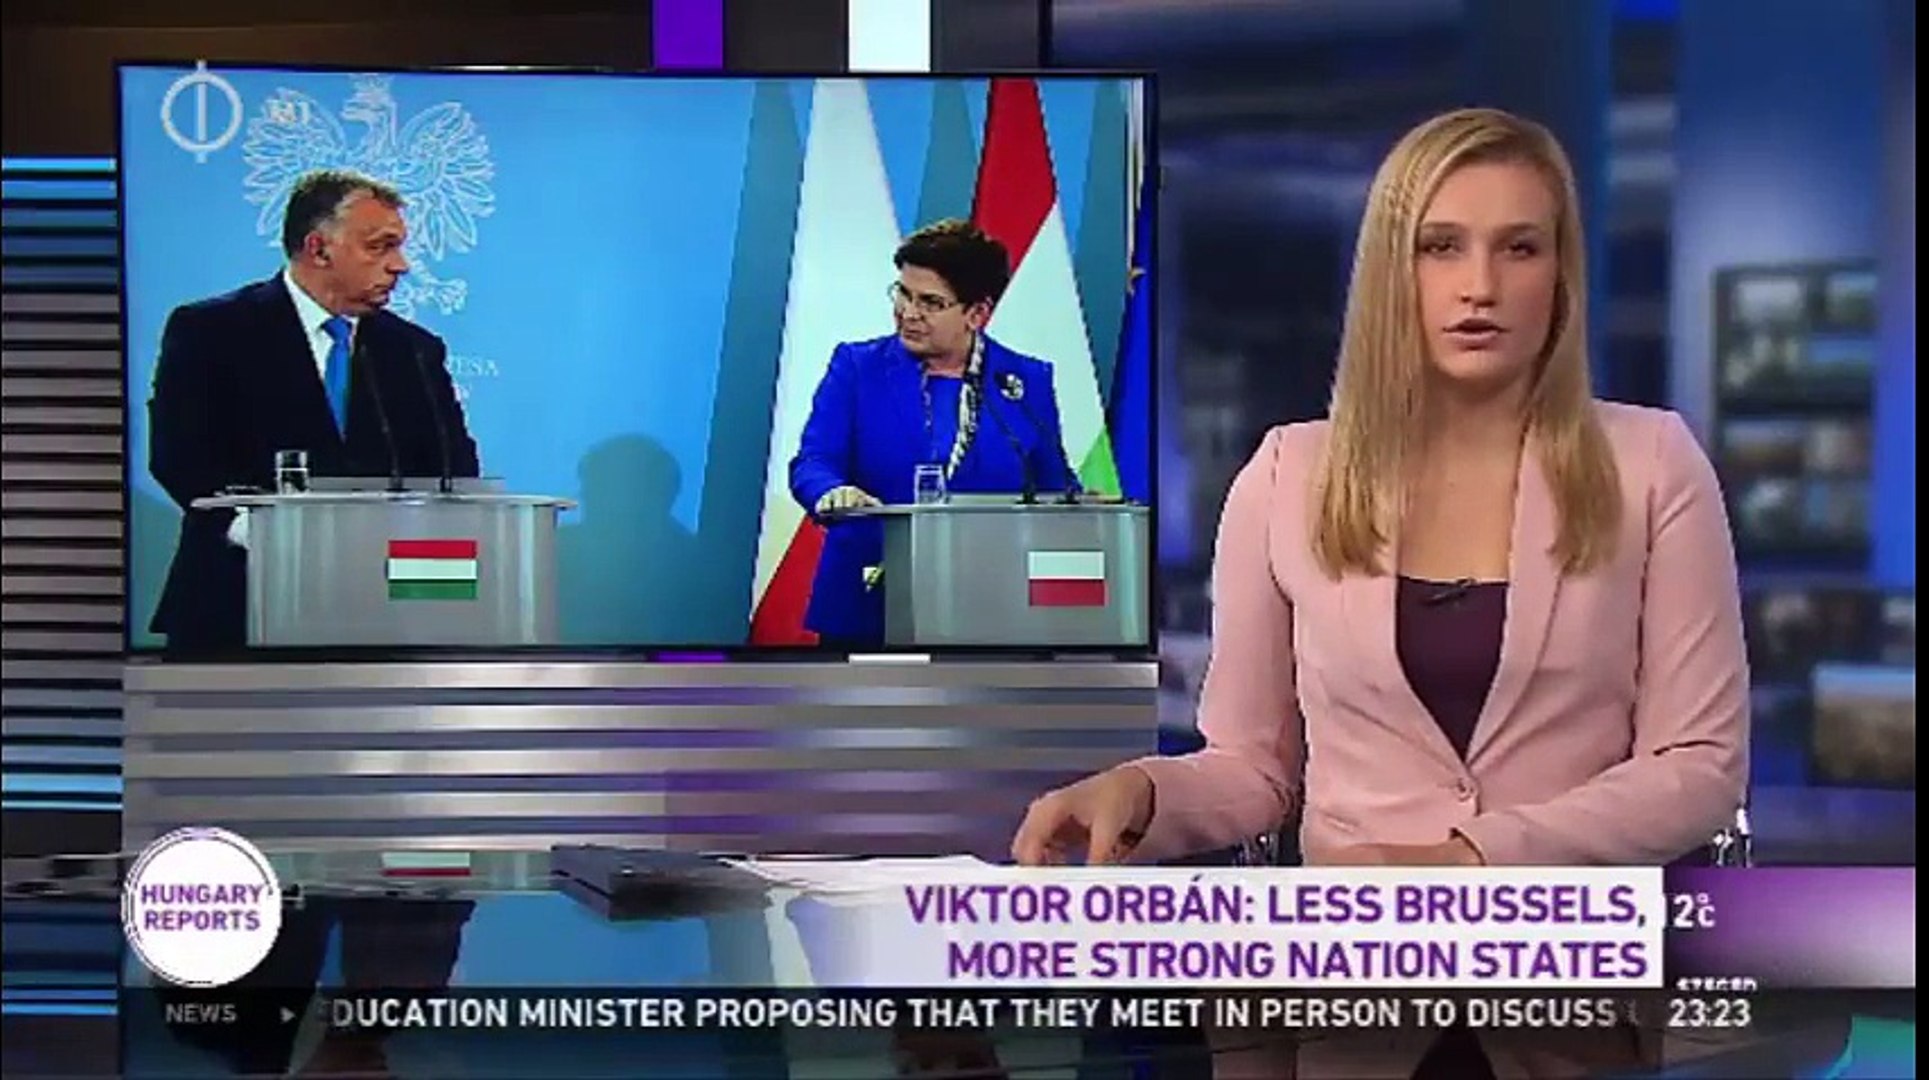 Viktor Orban: Less Brussels, Stronger Nation States